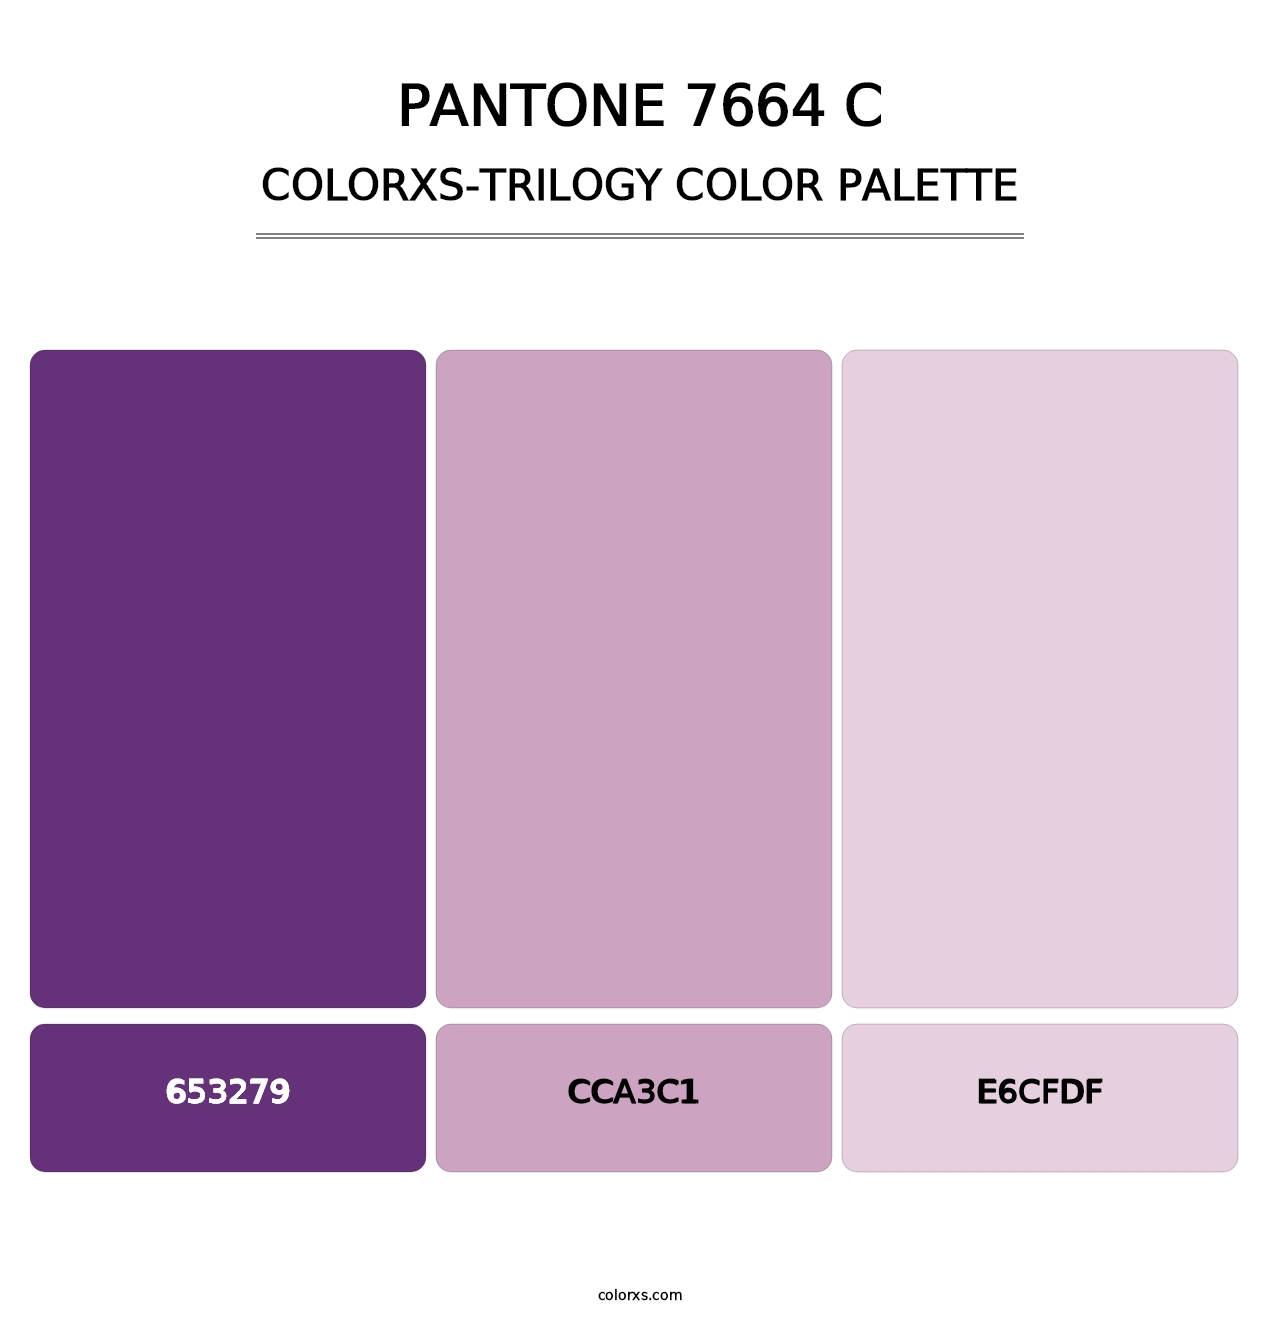 PANTONE 7664 C - Colorxs Trilogy Palette